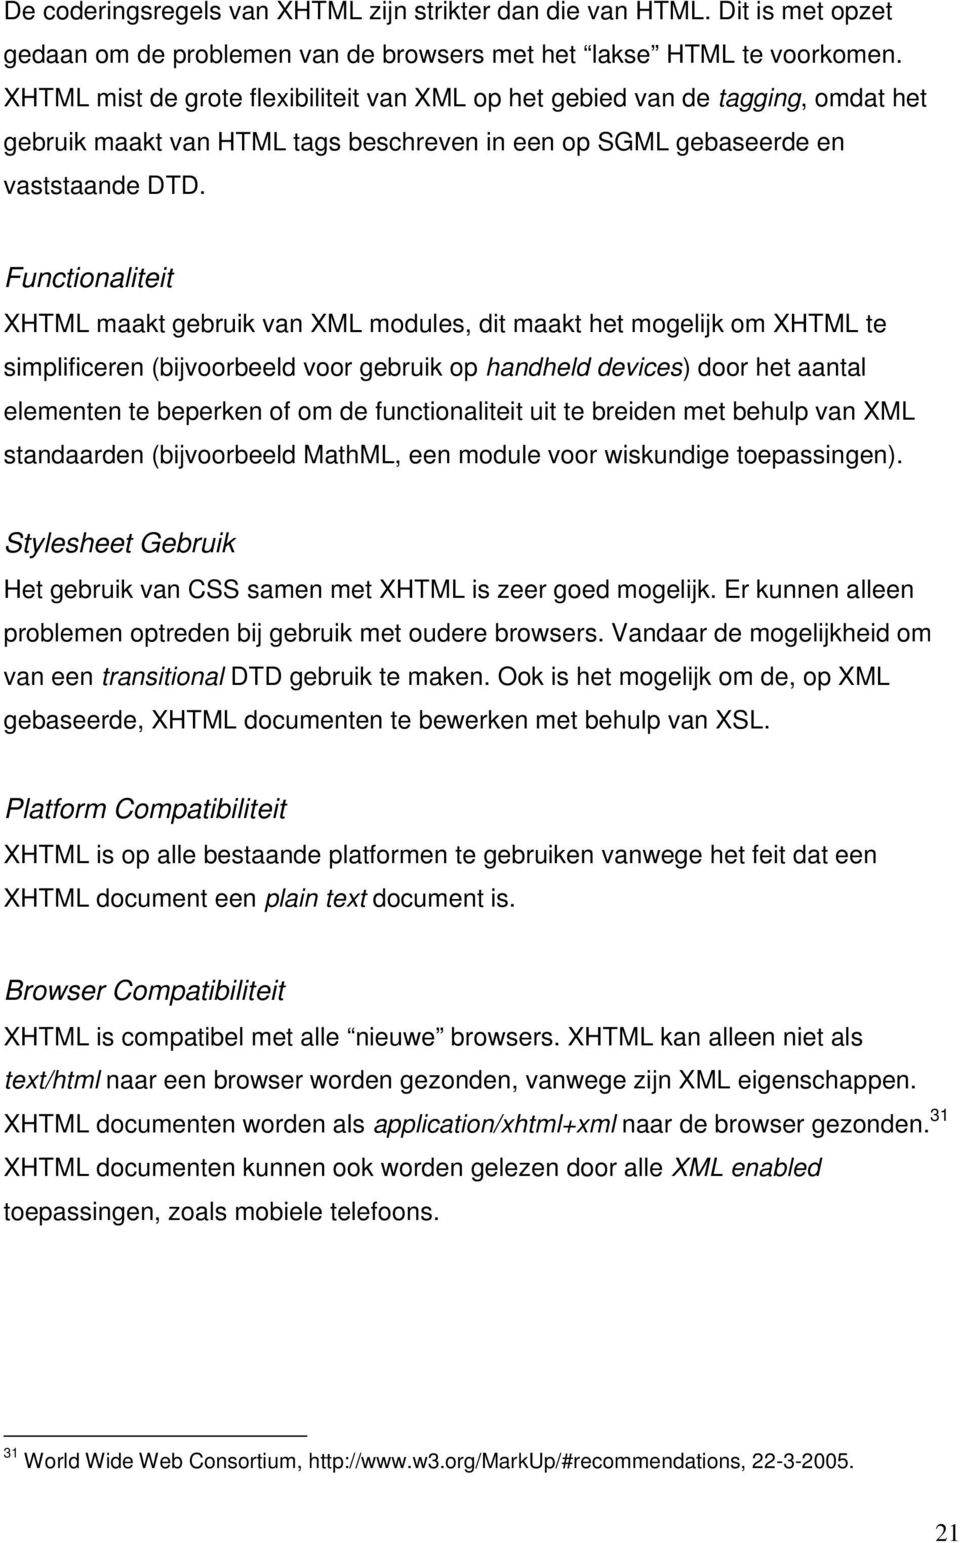 Functionaliteit XHTML maakt gebruik van XML modules, dit maakt het mogelijk om XHTML te simplificeren (bijvoorbeeld voor gebruik op handheld devices) door het aantal elementen te beperken of om de